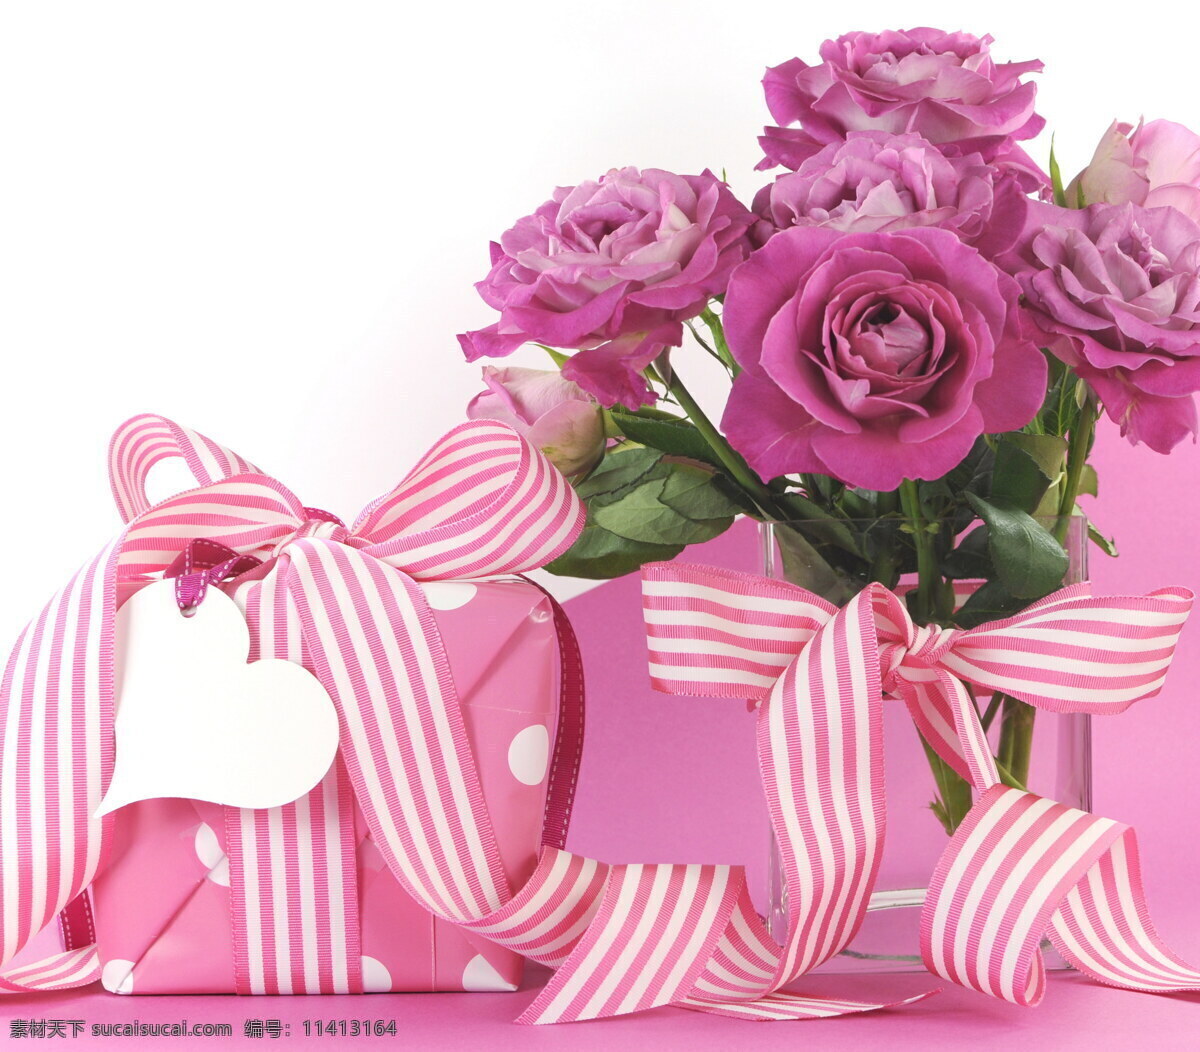 花朵 礼物 盒 礼物盒 丝带 妇女节 三八节 节日素材 节日庆典 生活百科